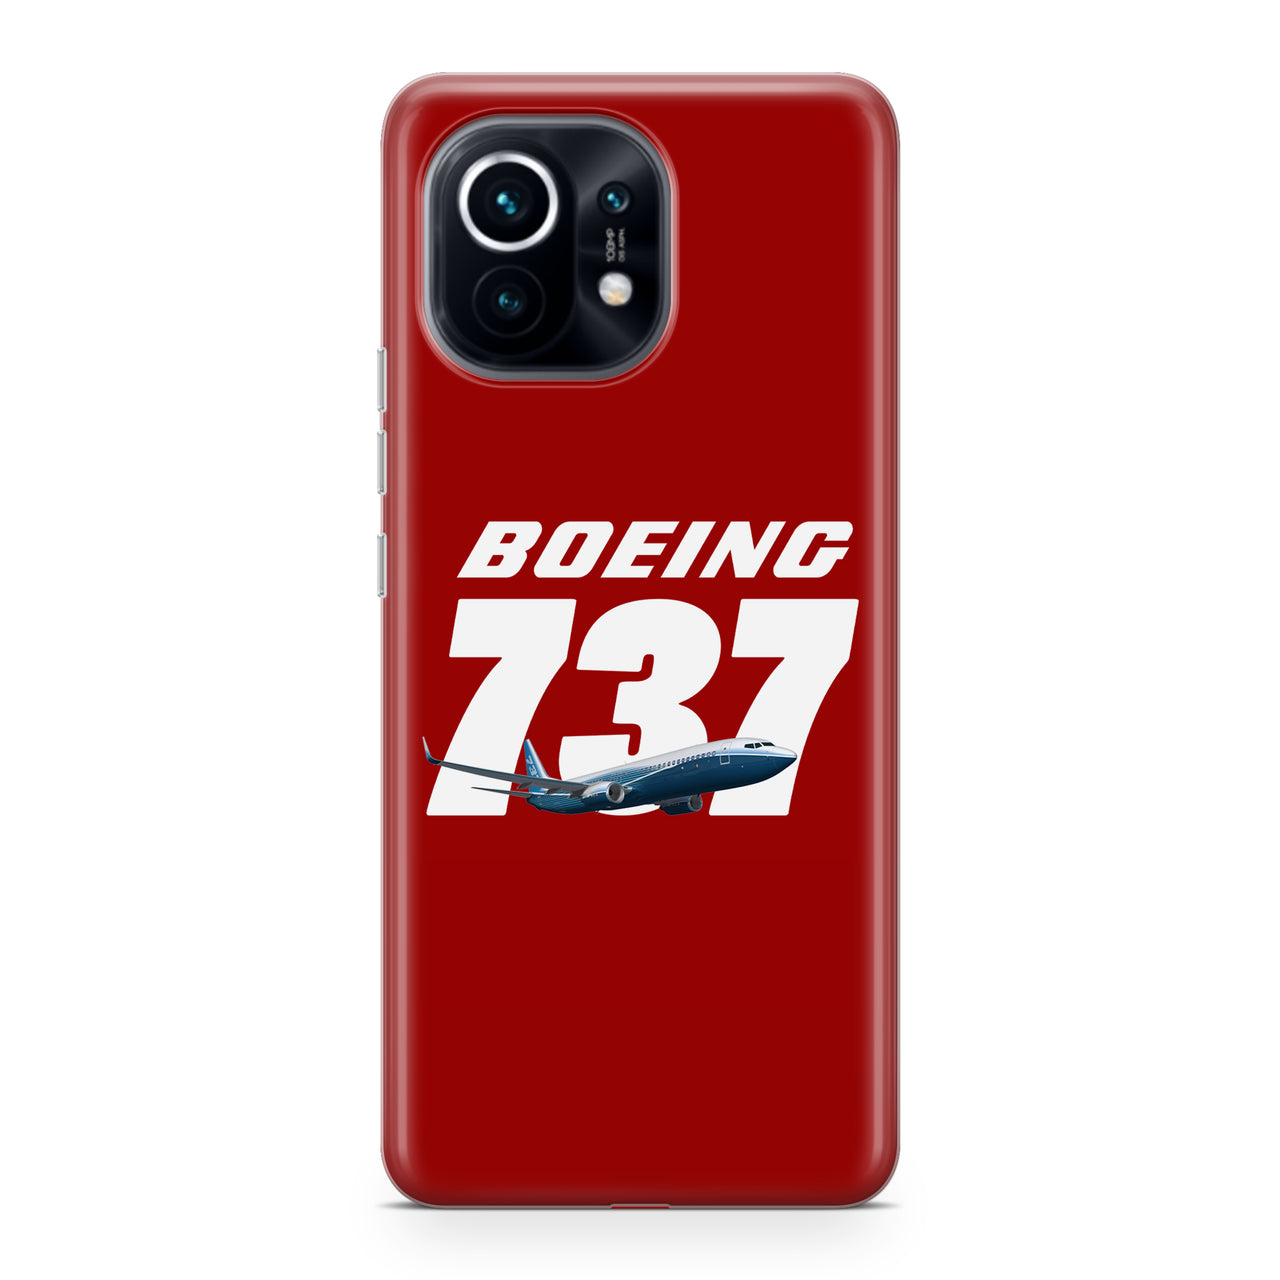 Super Boeing 737+Text Designed Xiaomi Cases